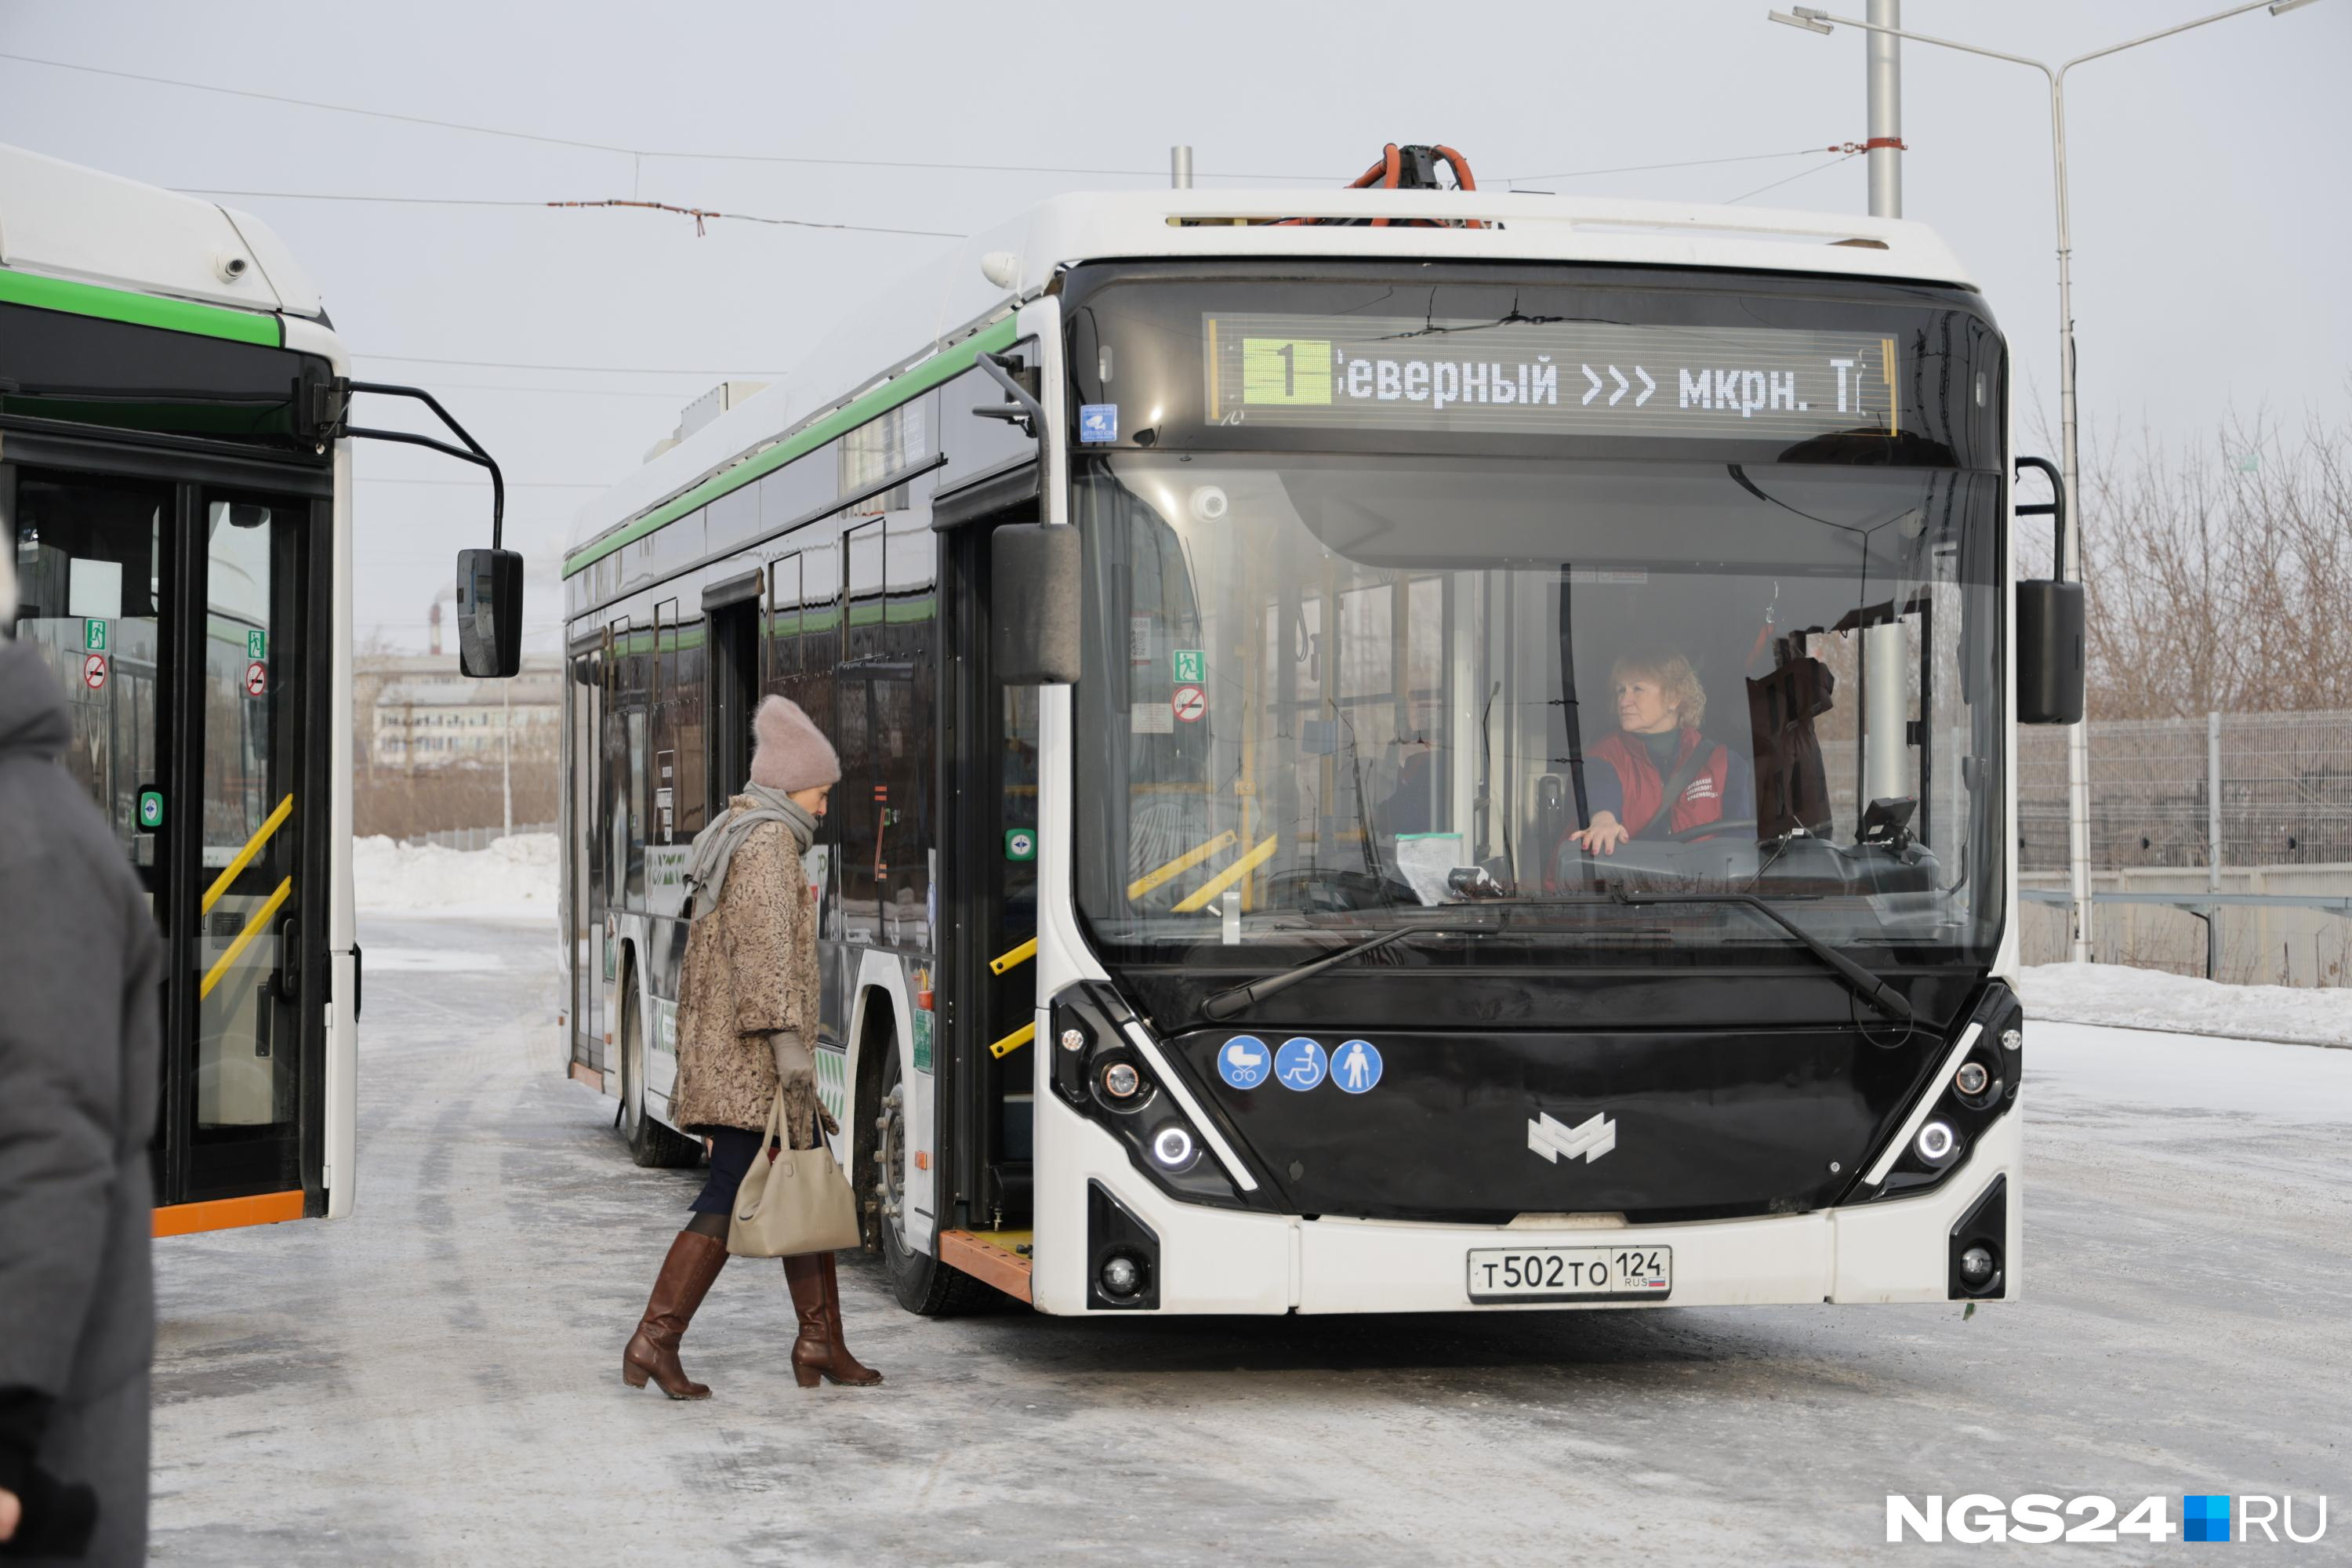 В Красноярске запустили электробусы между Северным и Тихими Зорями. Как их узнать и где они останавливаются?